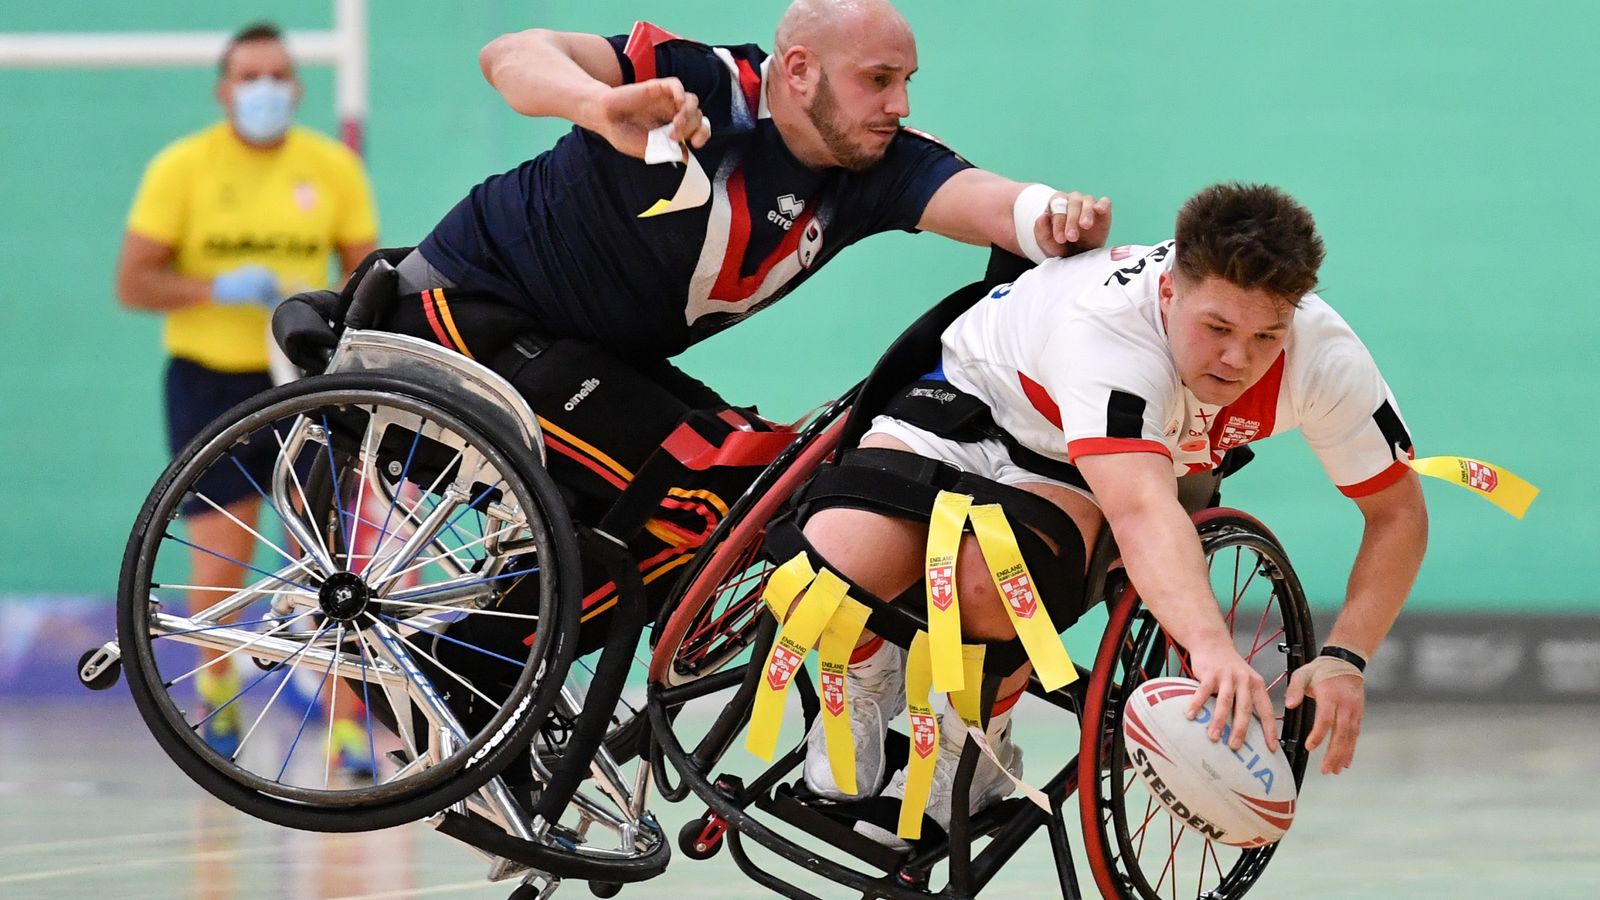 Coupe du monde de rugby : Rencontrez les huit équipes participant au tournoi en fauteuil roulant |  nouvelles de la ligue de rugby